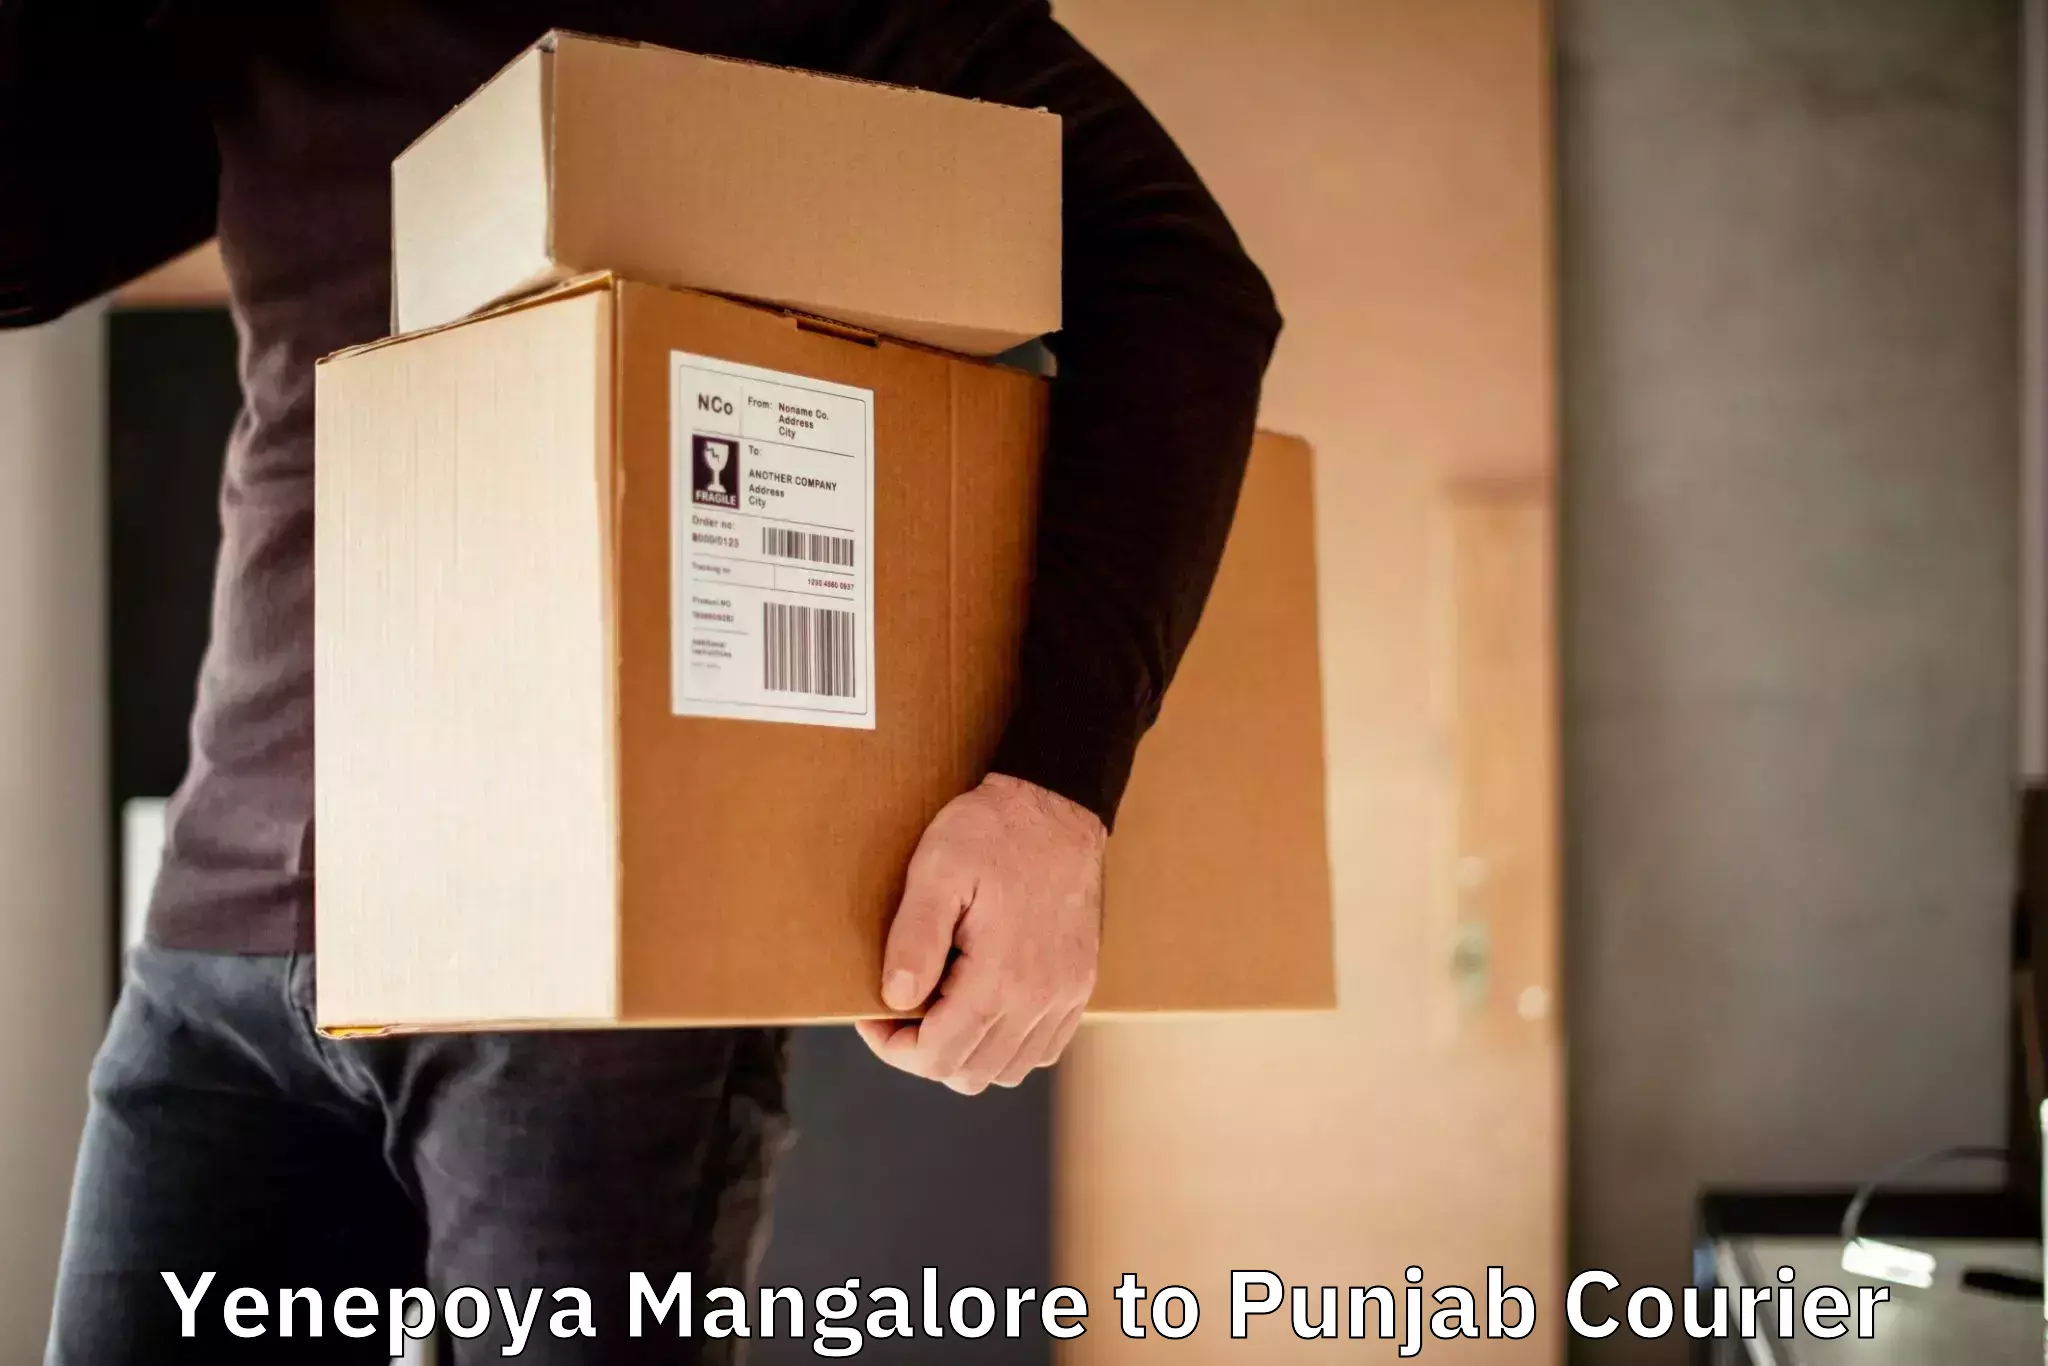 Efficient parcel service Yenepoya Mangalore to Batala